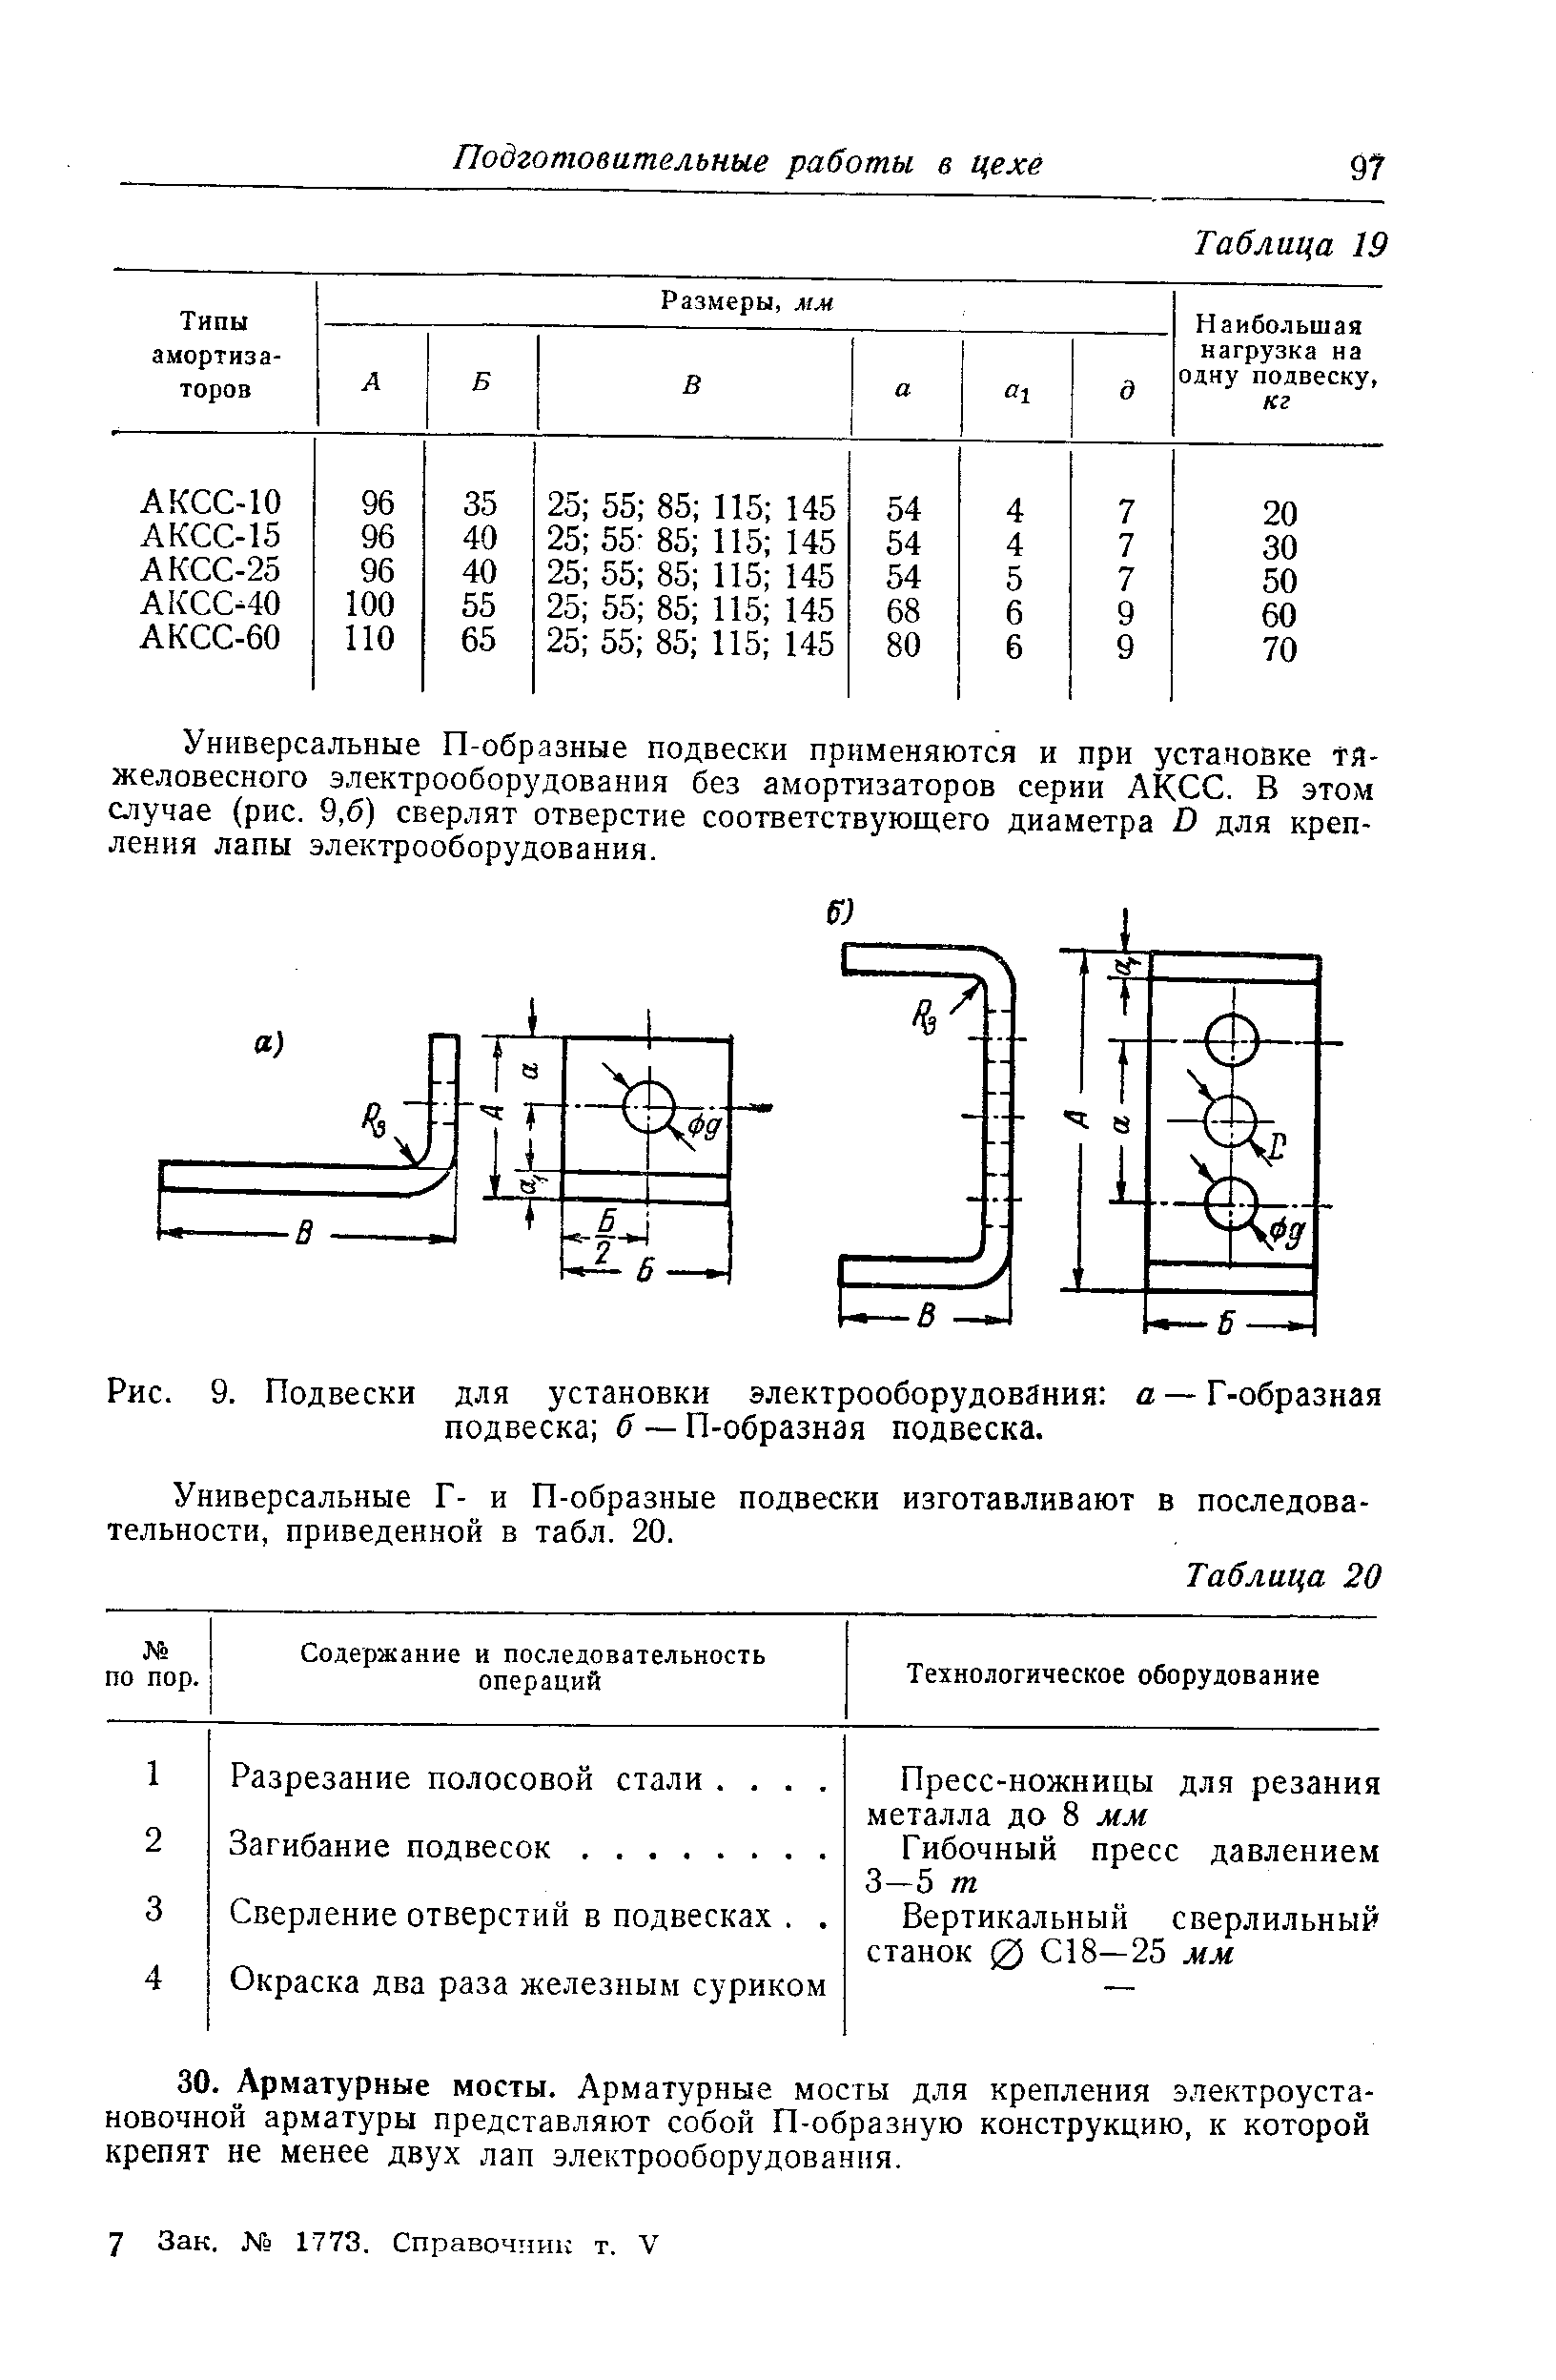 Рис. 9. Подвески для установки электрооборудования а —Г-образная подвеска б — П-образная подвеска.
